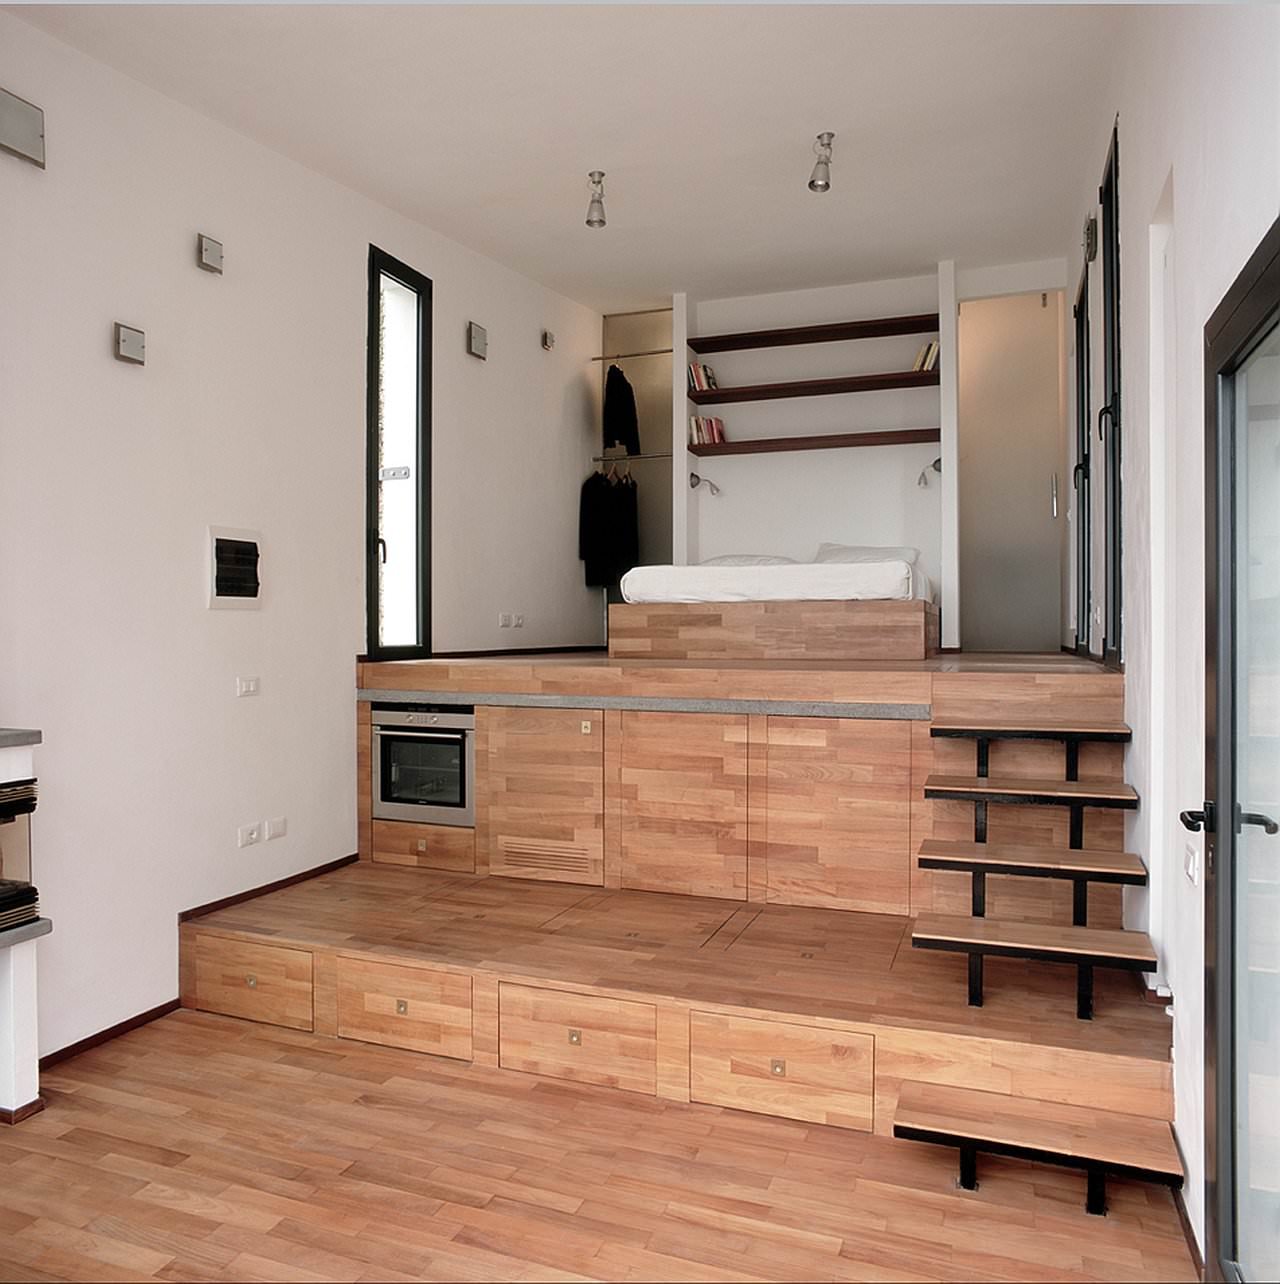 Ristrutturazione interno piccola villa - il pavimento diventa terrazza, puoi salotto, piano cucina, camera da letto e bagno, disegnando una scalinata rivestita in legno.
